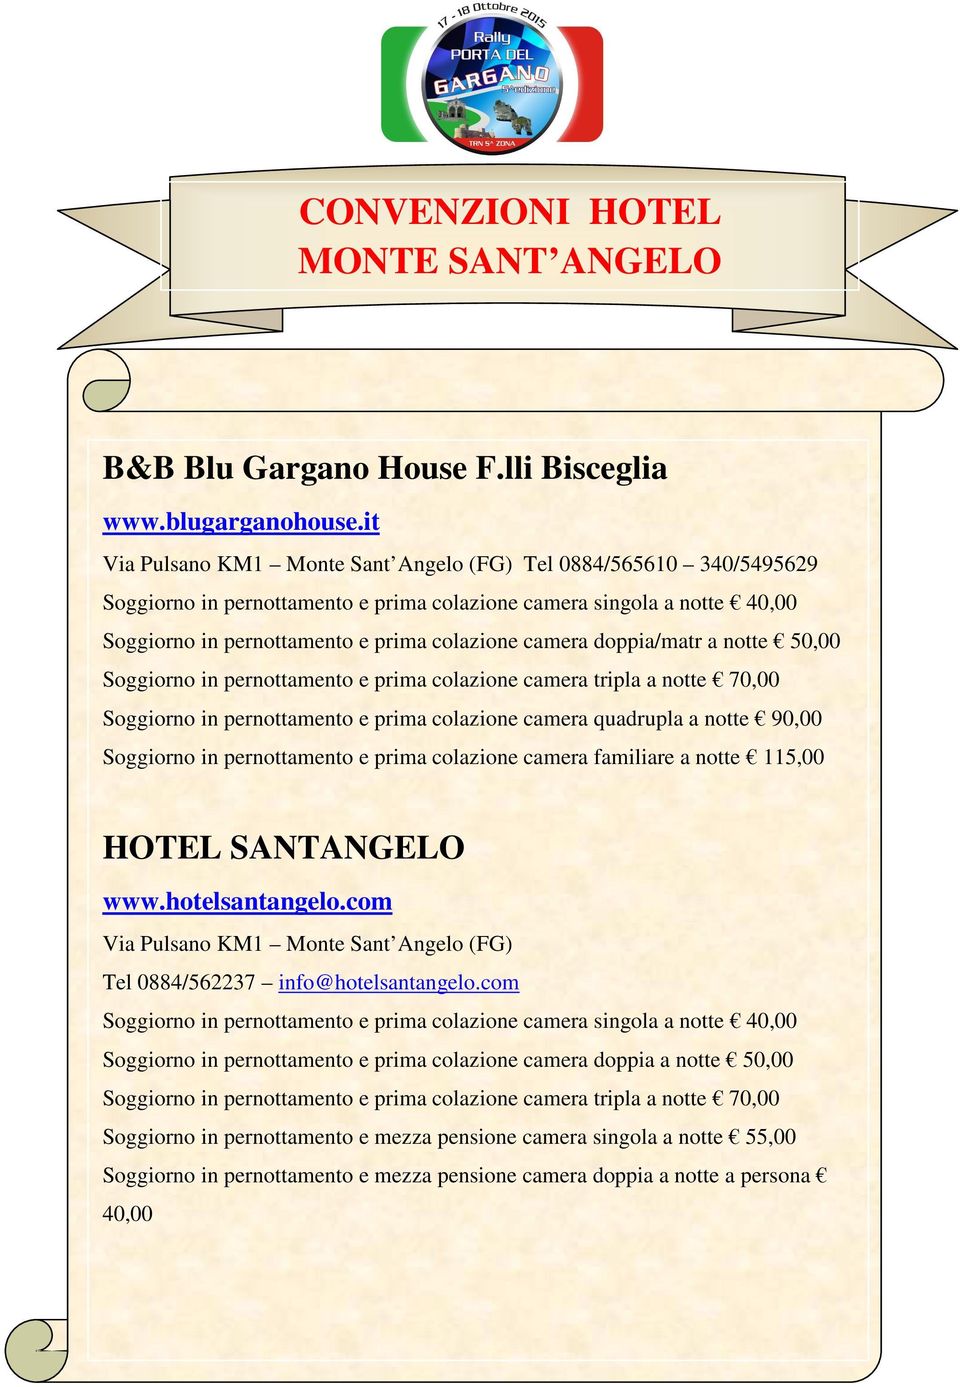 50,00 Soggiorno in pernottamento e prima colazione camera familiare a notte 115,00 HOTEL SANTANGELO www.hotelsantangelo.